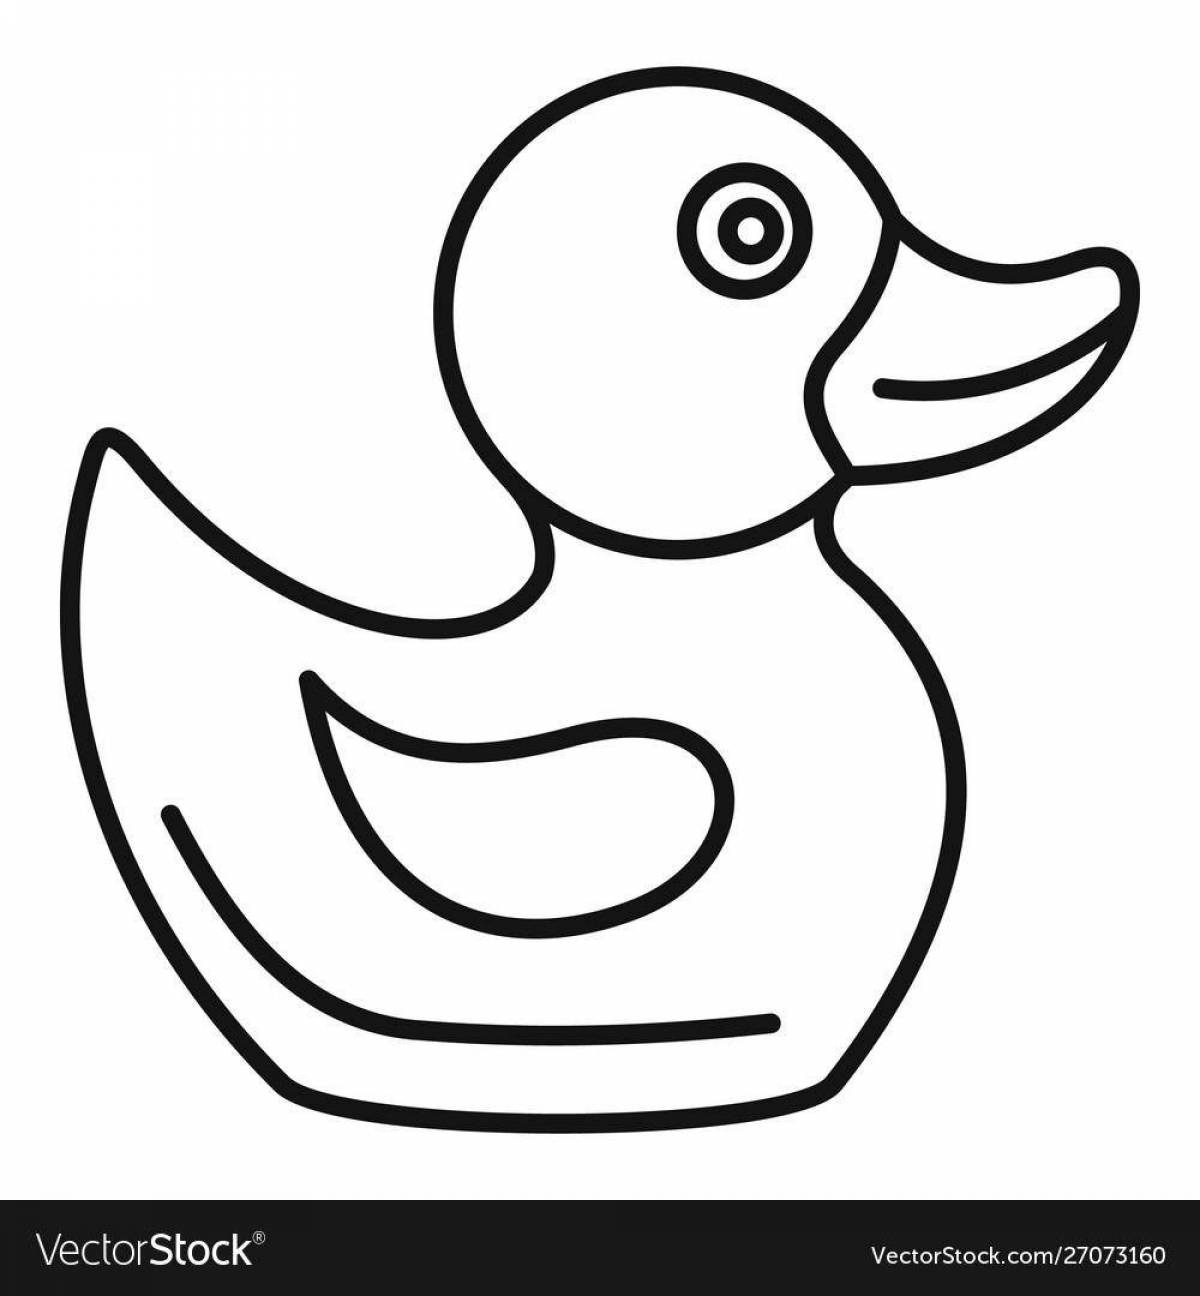 Fun coloring lalanfant duck